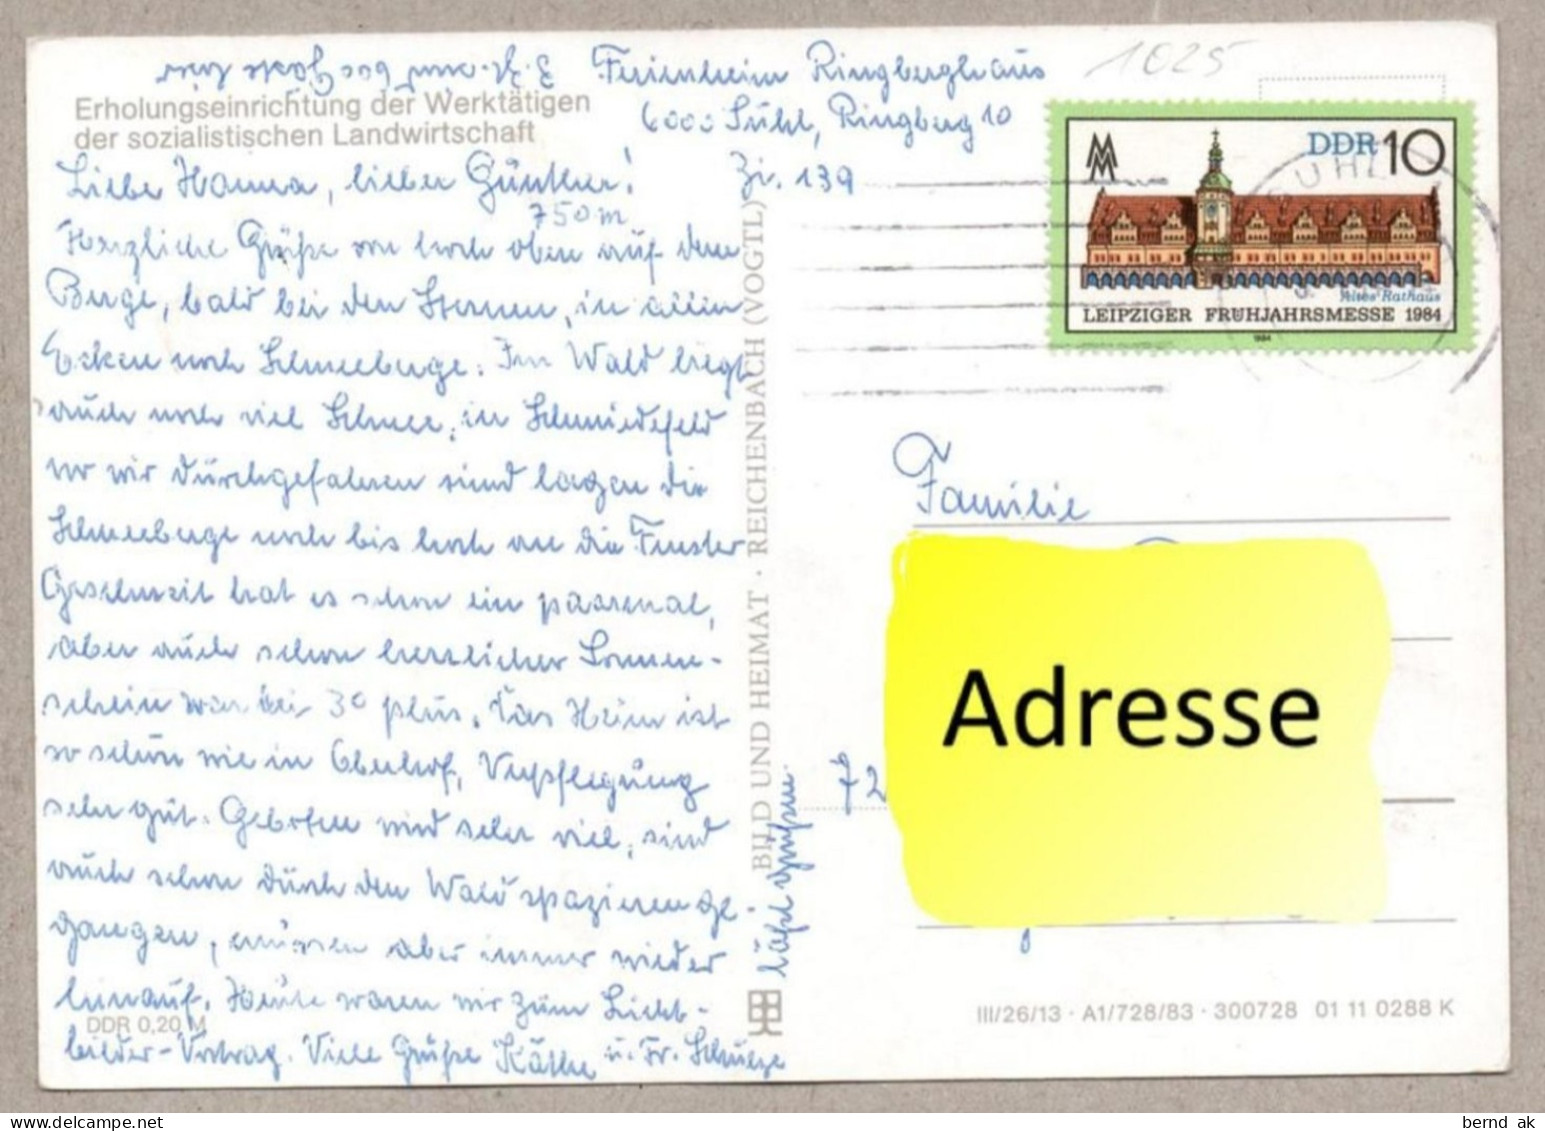 029#  BRD - 6 Color- AK: Suhl - Waffenmuseum, Rathaus, Warenhaus, Interhotel (alle Karten im Bild)